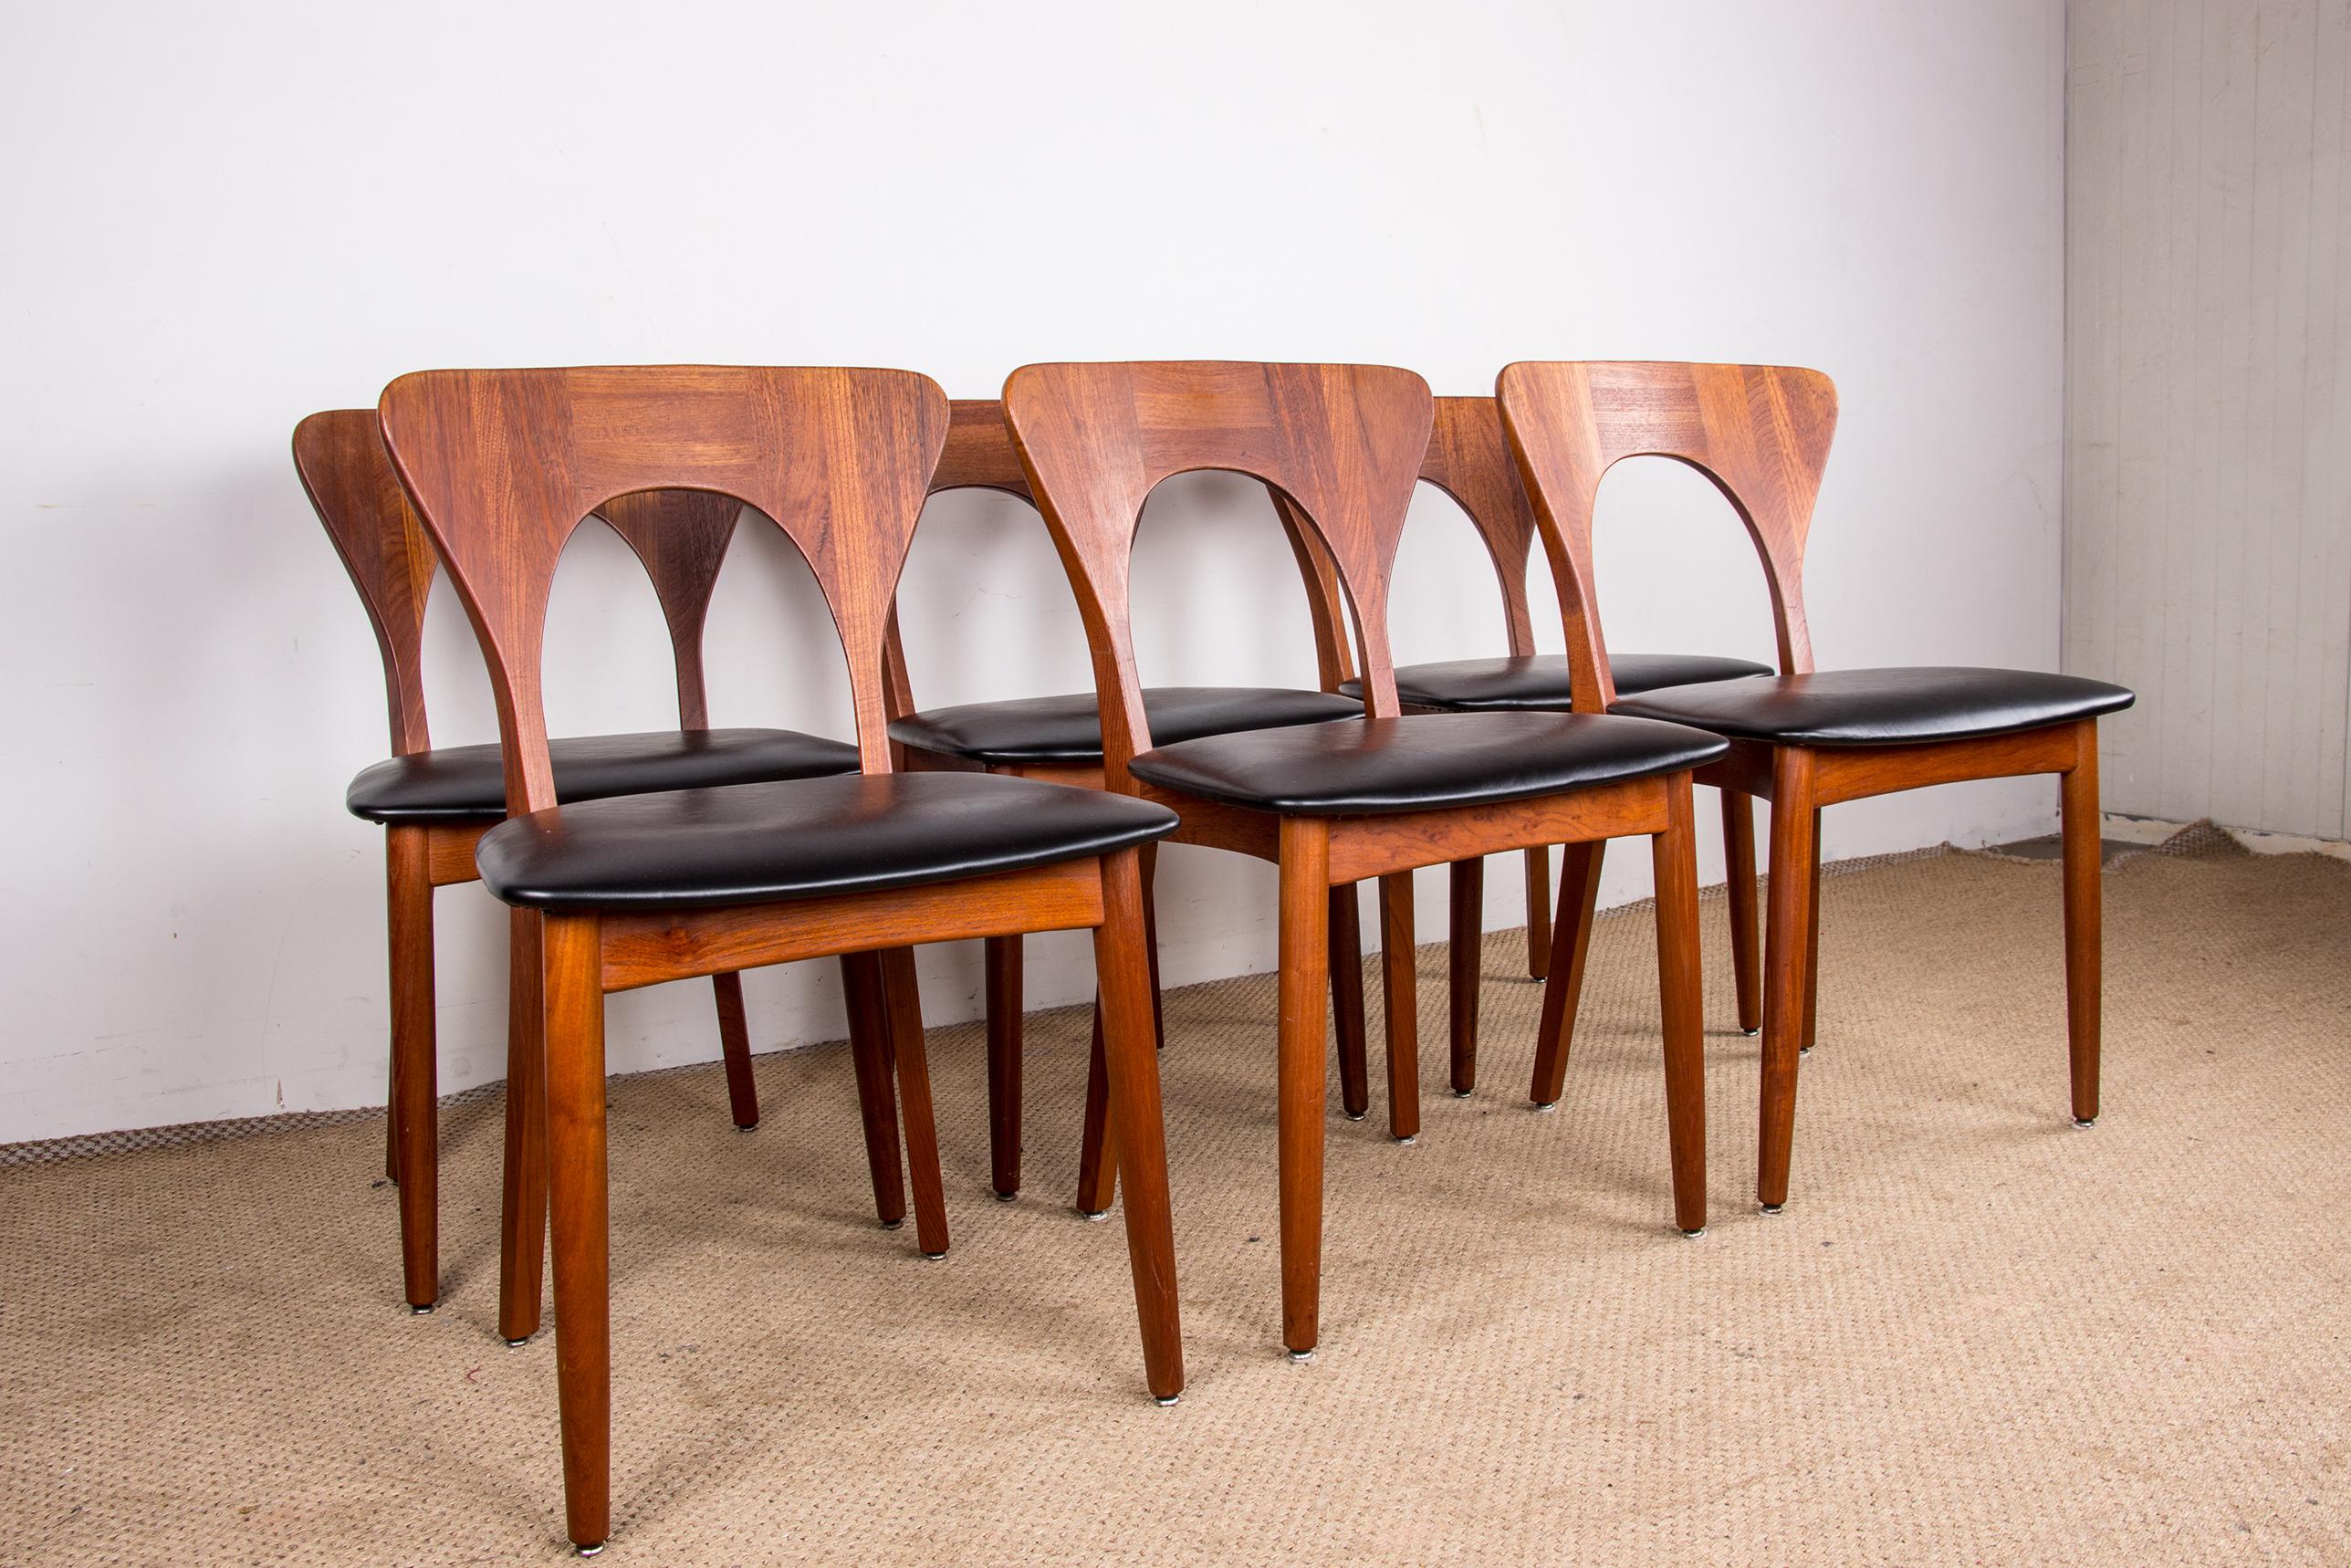 Series of 6 Danish chairs in Teak and skai, Peter model by Niels Koefoed 1960. 13